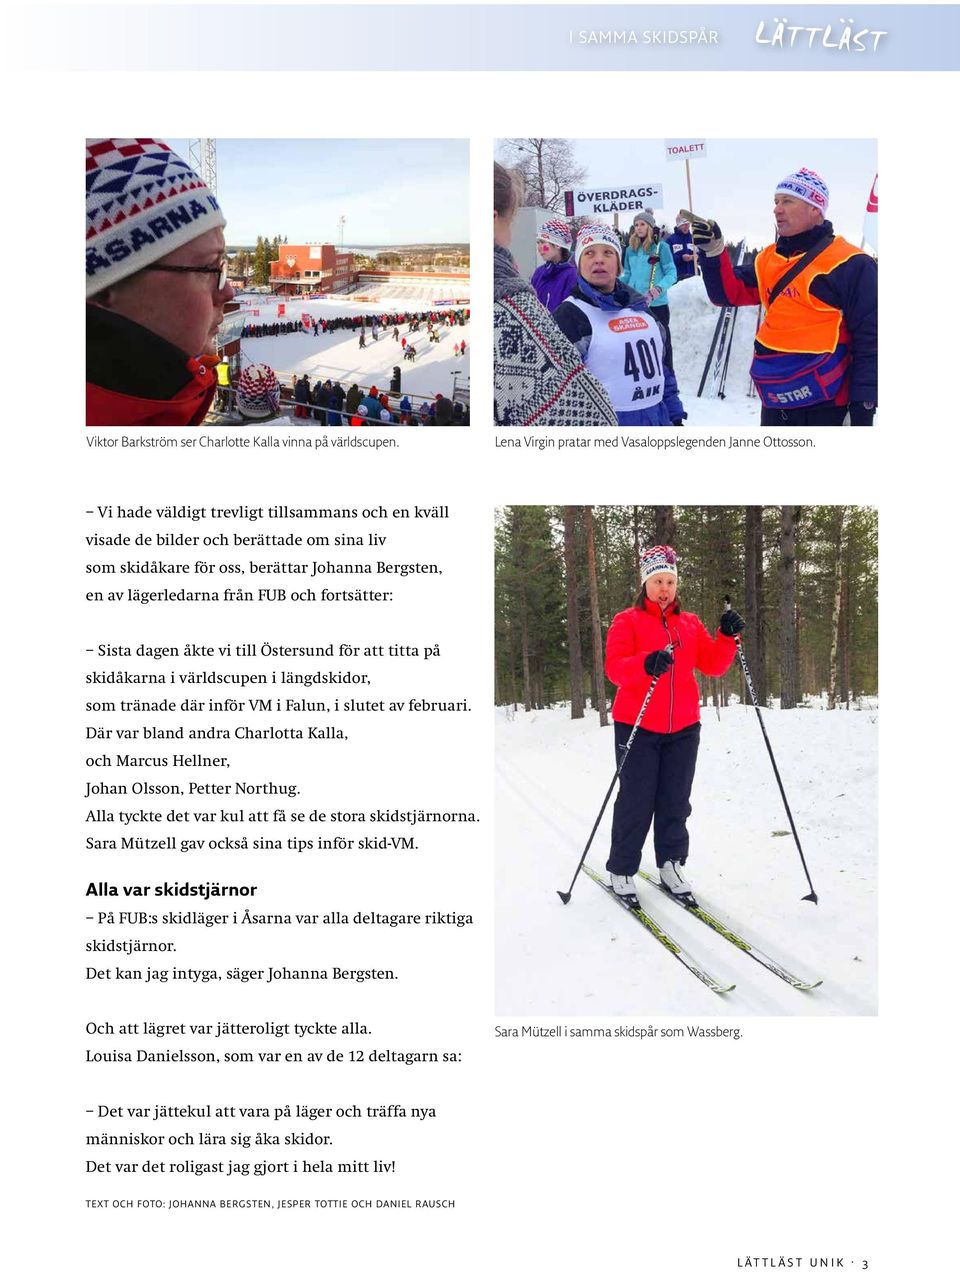 åkte vi till Östersund för att titta på skidåkarna i världscupen i längdskidor, som tränade där inför VM i Falun, i slutet av februari.